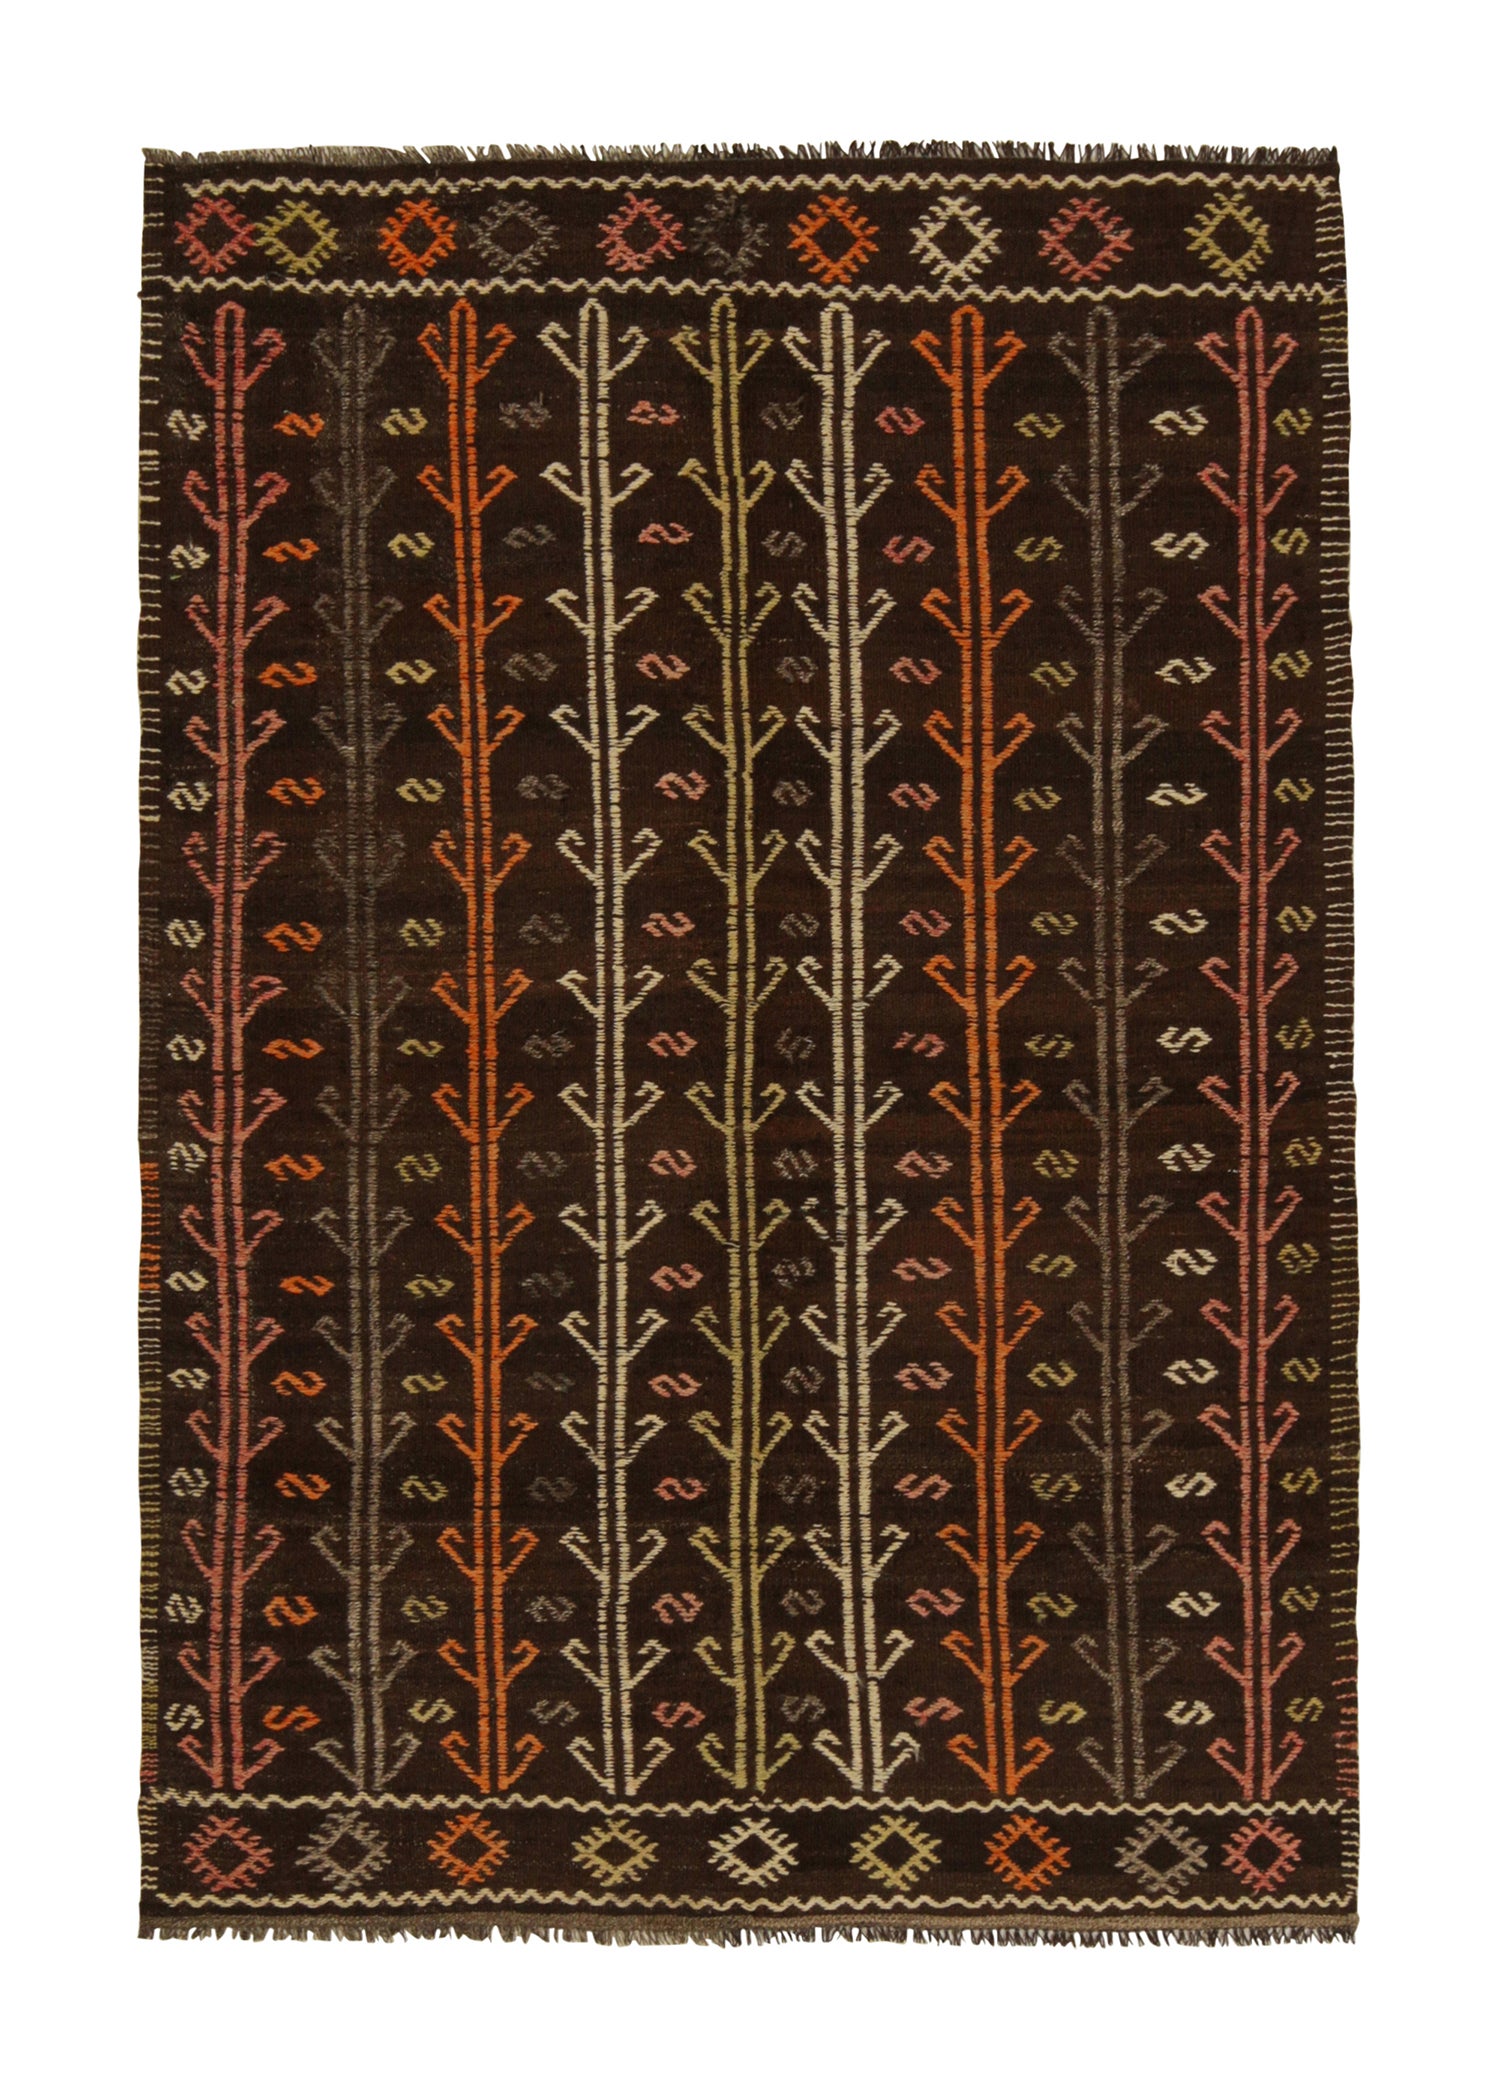 Vintage Chaput Style Kilim in Black, Orange, Grey Tribal Pattern by Rug & Kilim